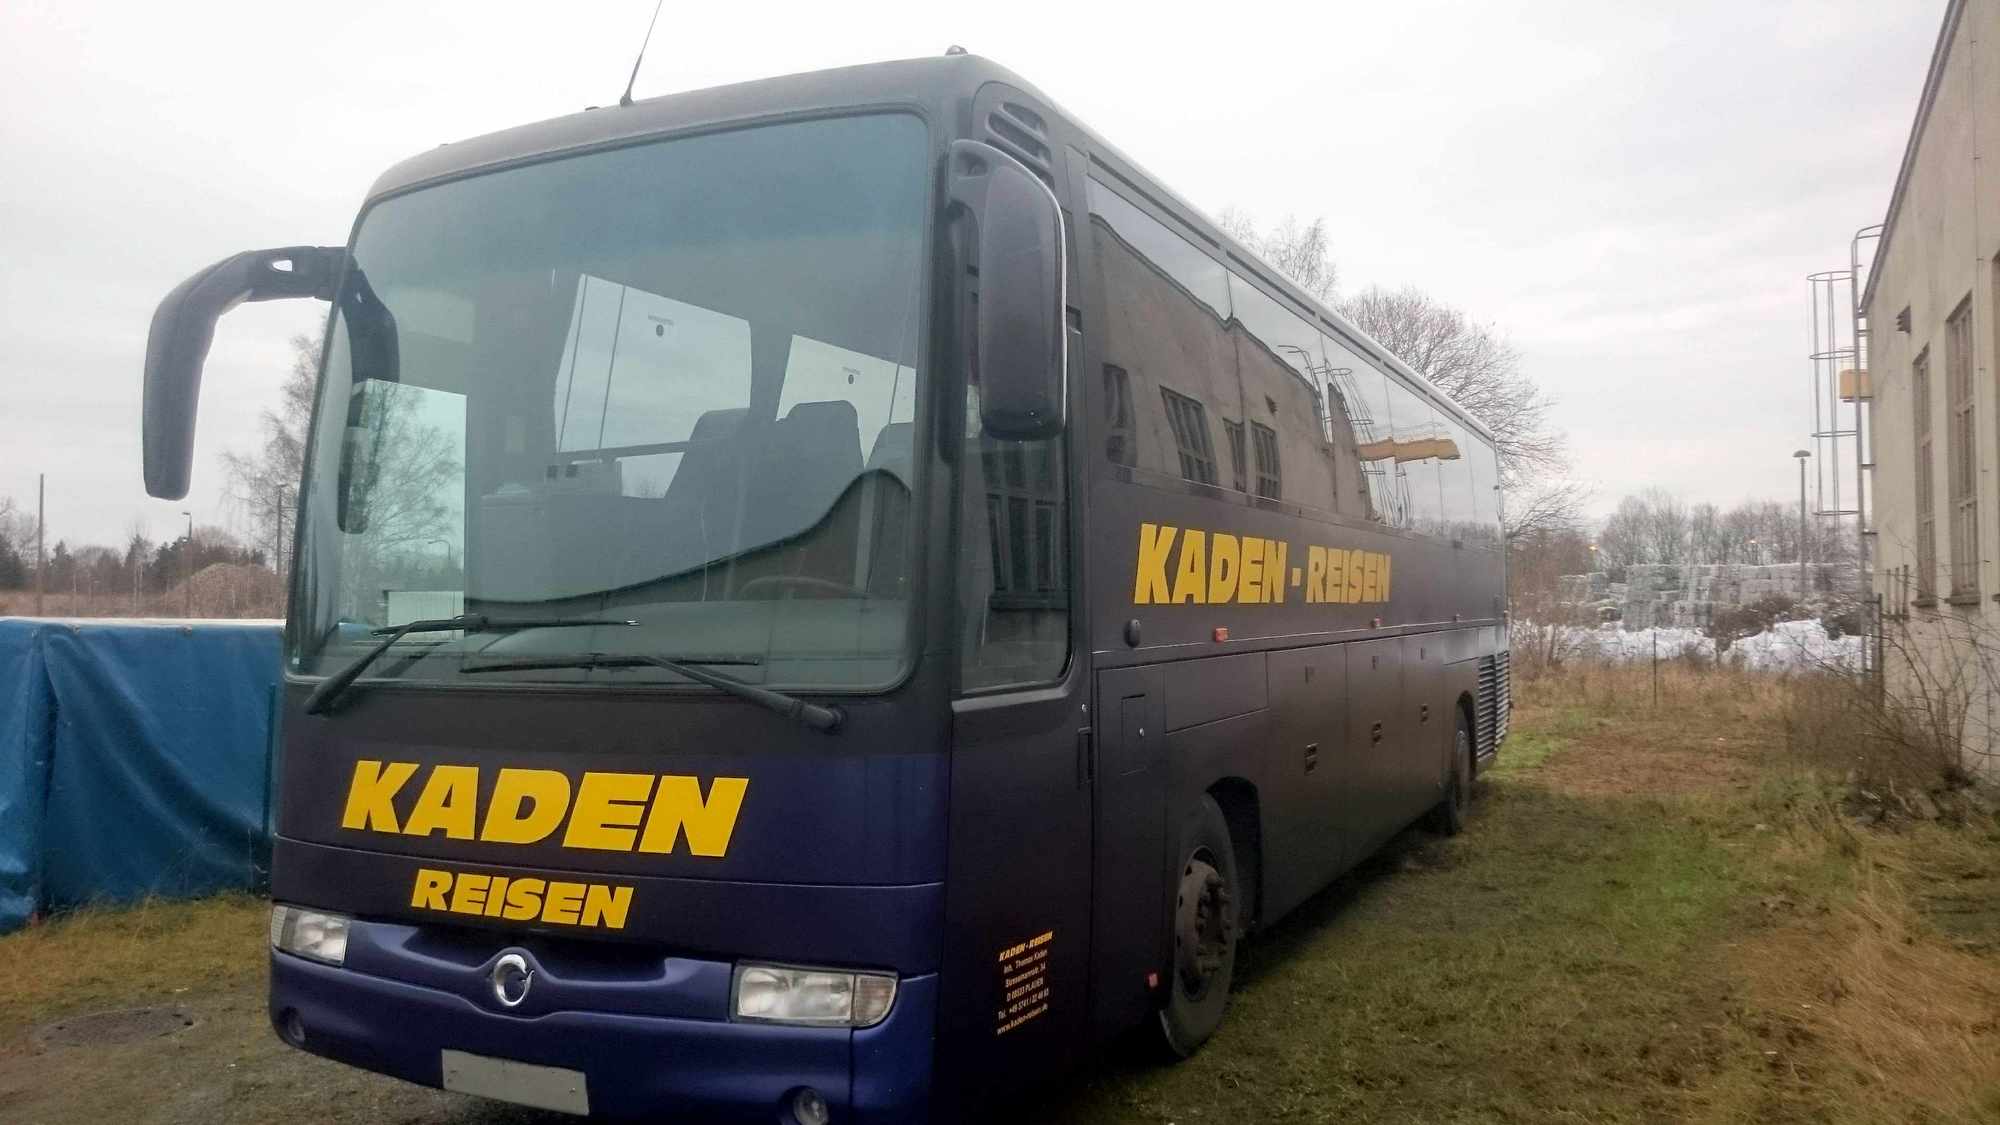 Kaden-Reisen undefined: photos 3